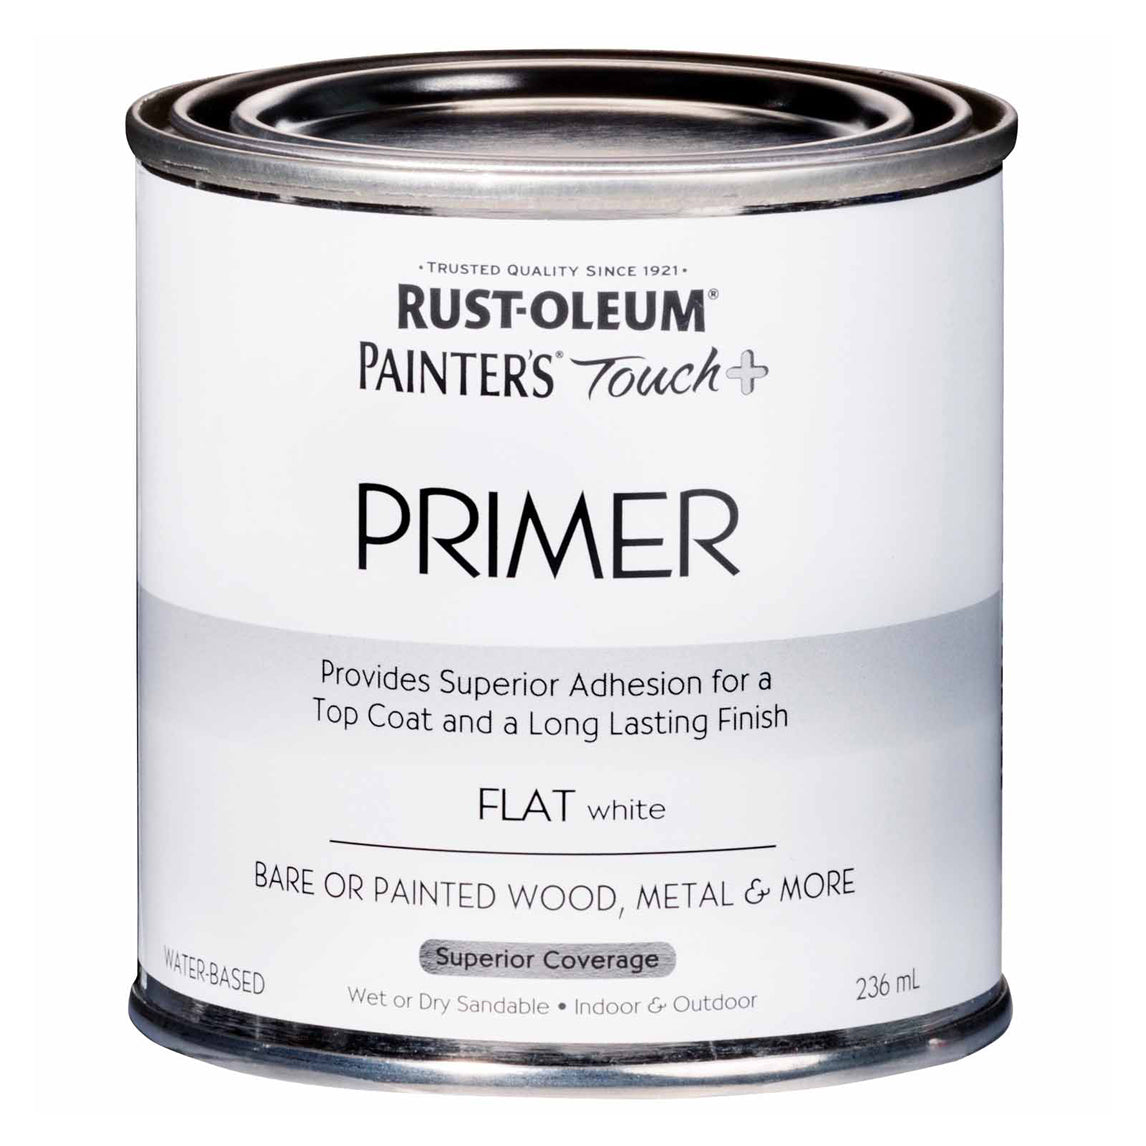 Painters Touch Plus Paint